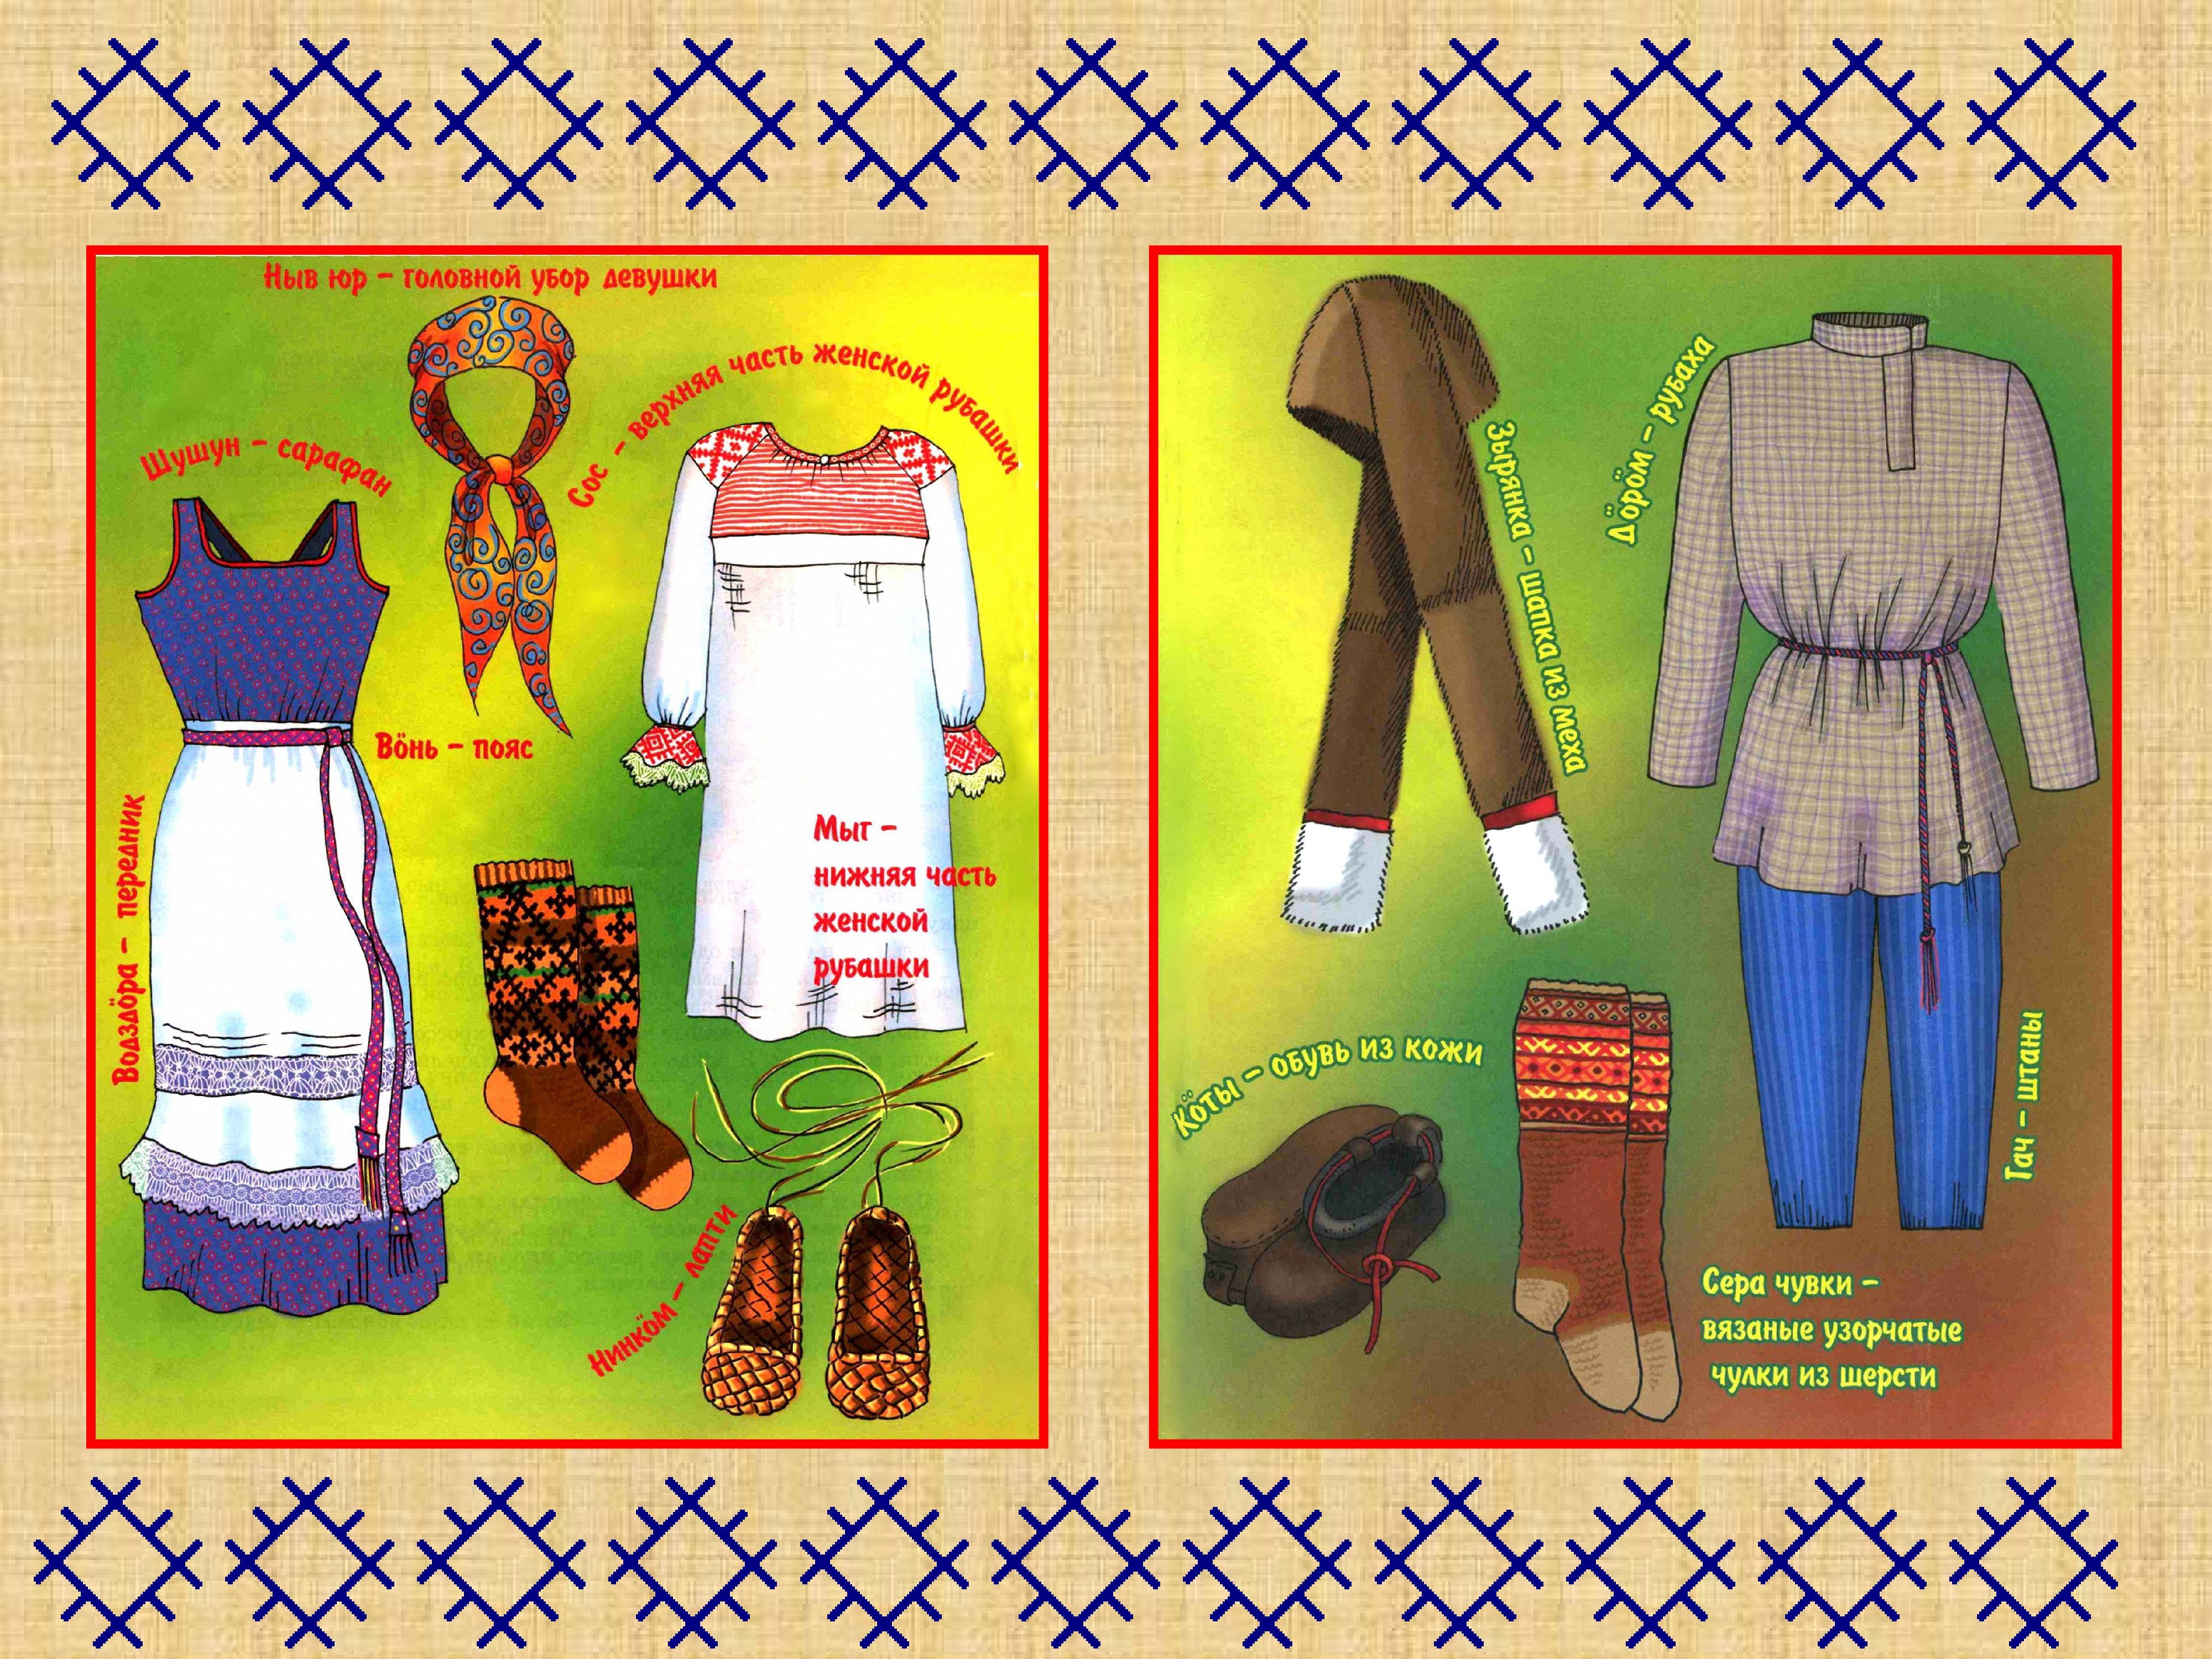 Национальный костюм Коми Пермяков с описанием